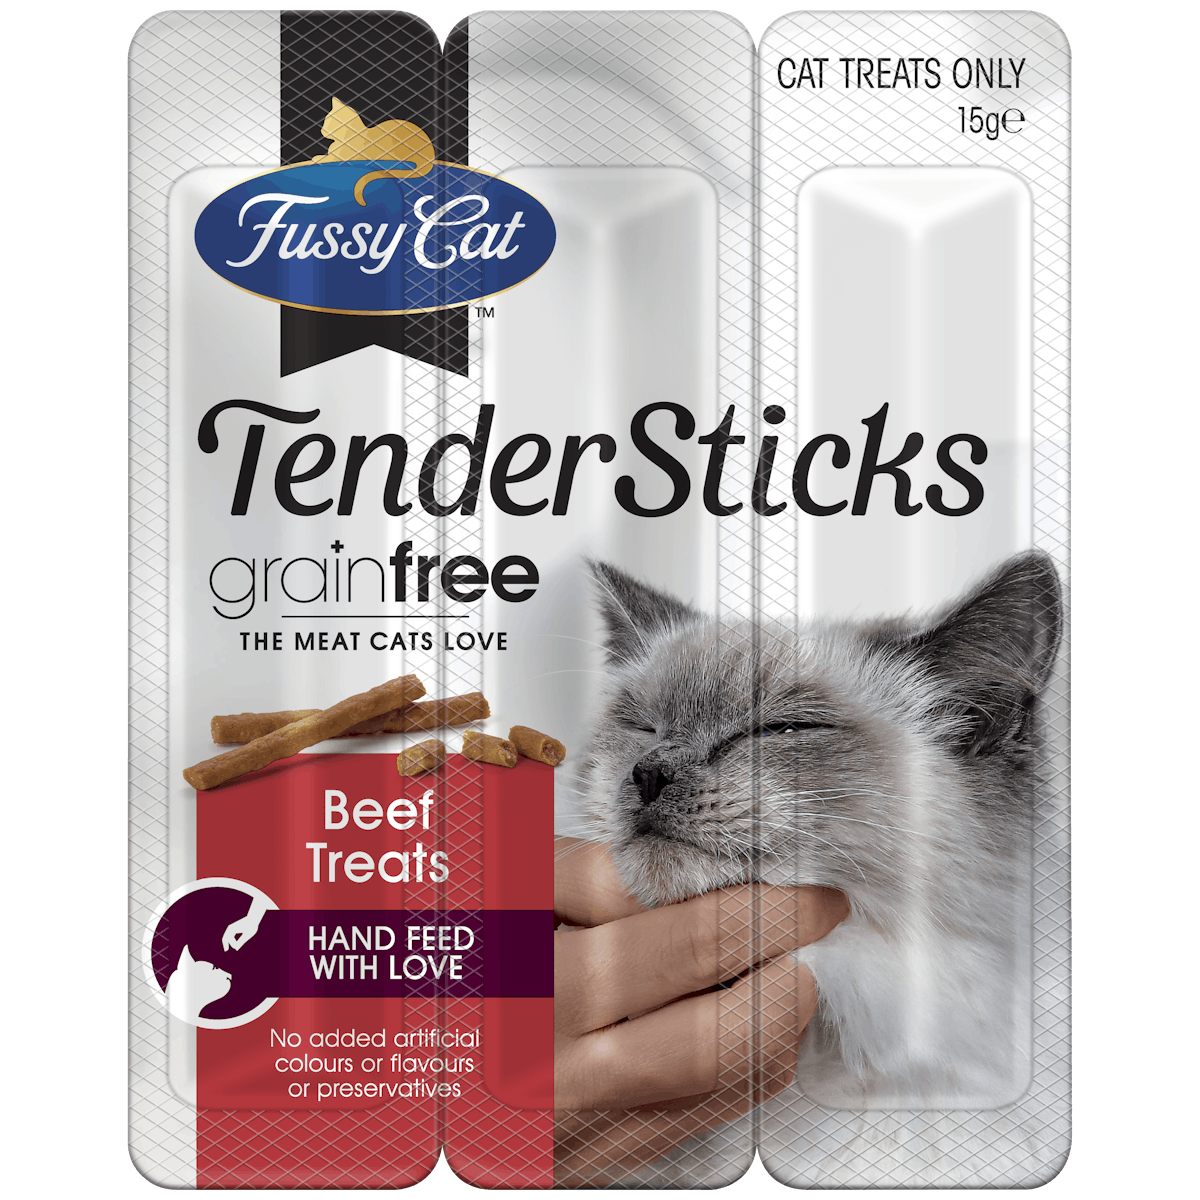 Fussy Cat | Beef Treats 15g | Cat treats | Left of pack